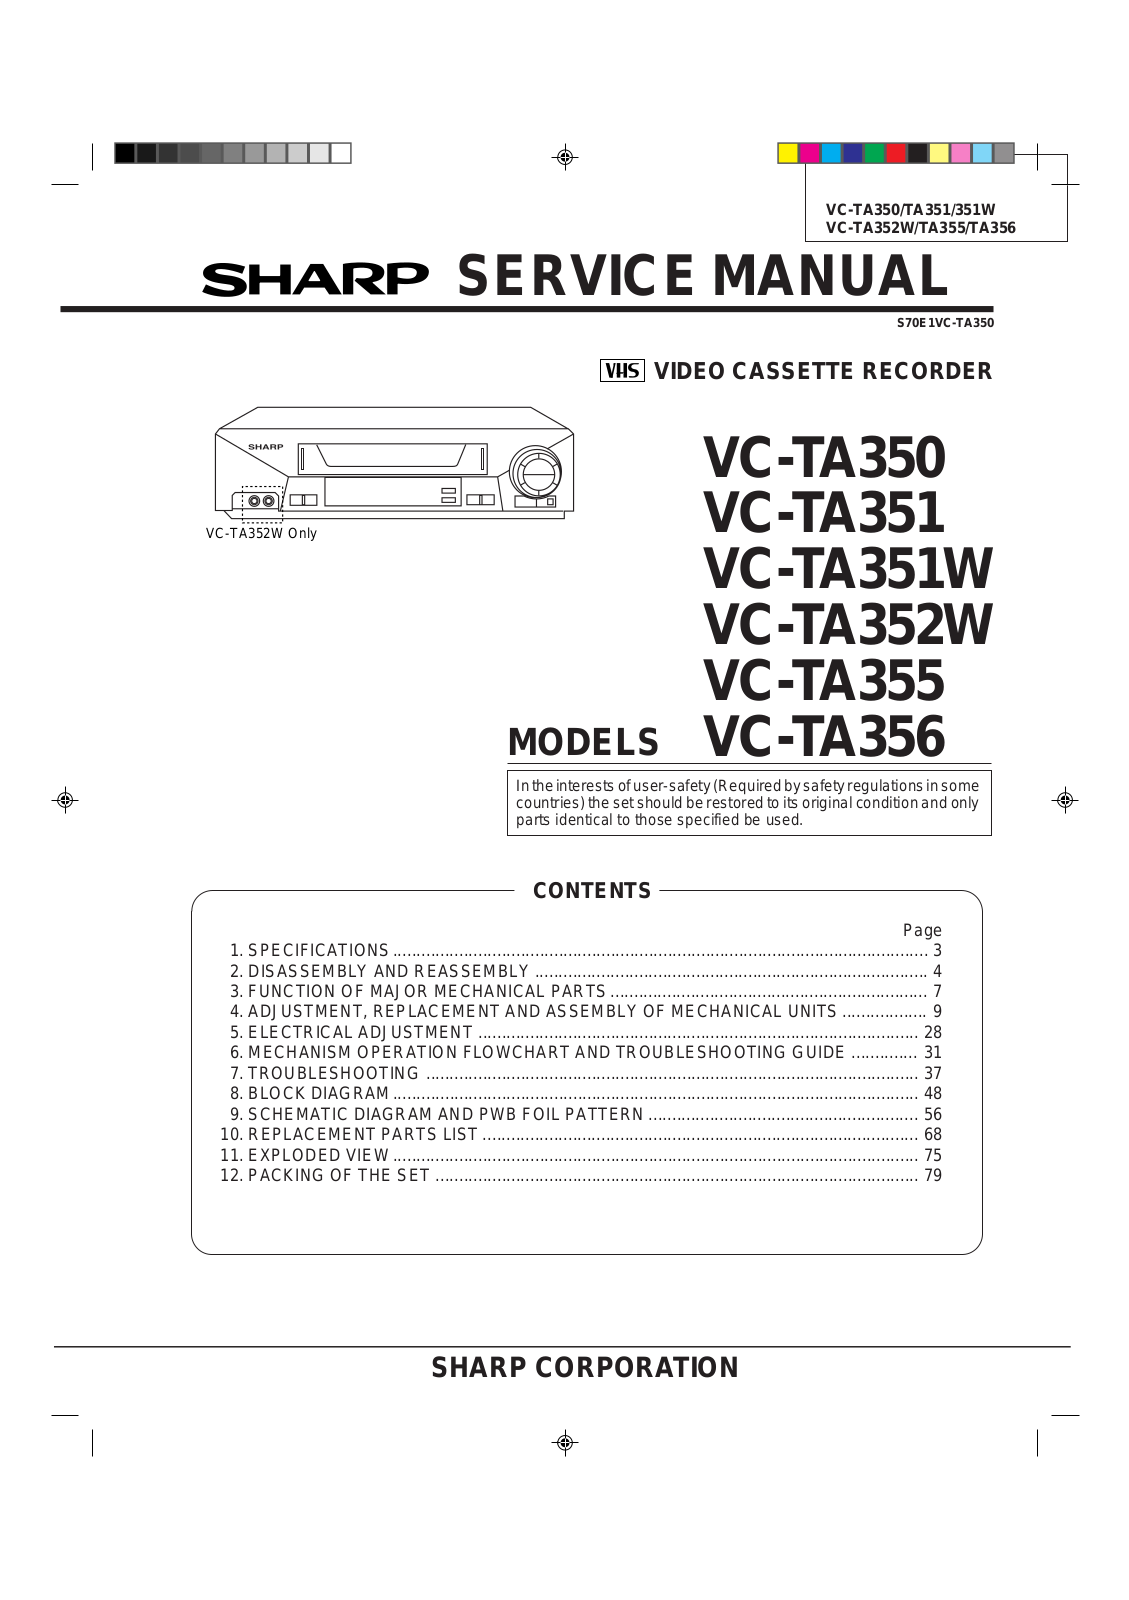 SHARP VC-TA350, VC-TA351, VC-TA351W, VC-TA355, VC-TA356 Service Manual